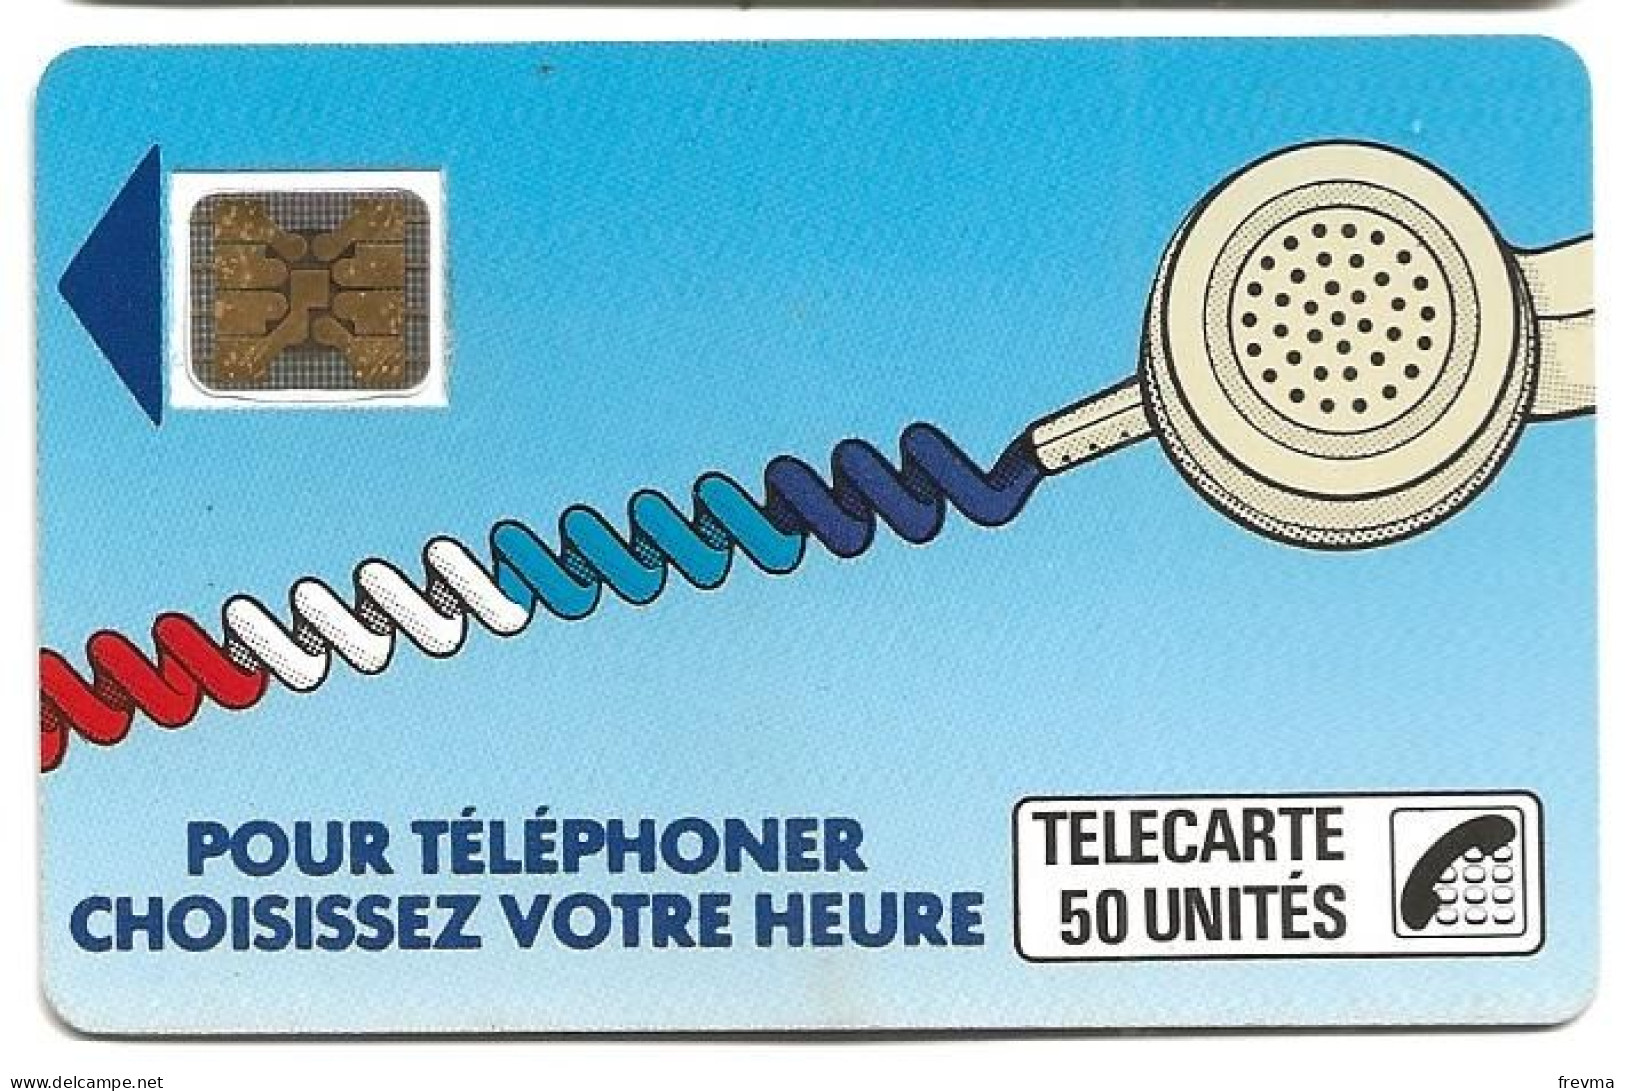 Telecarte K 8 50 Unités SC4on - Telefonschnur (Cordon)